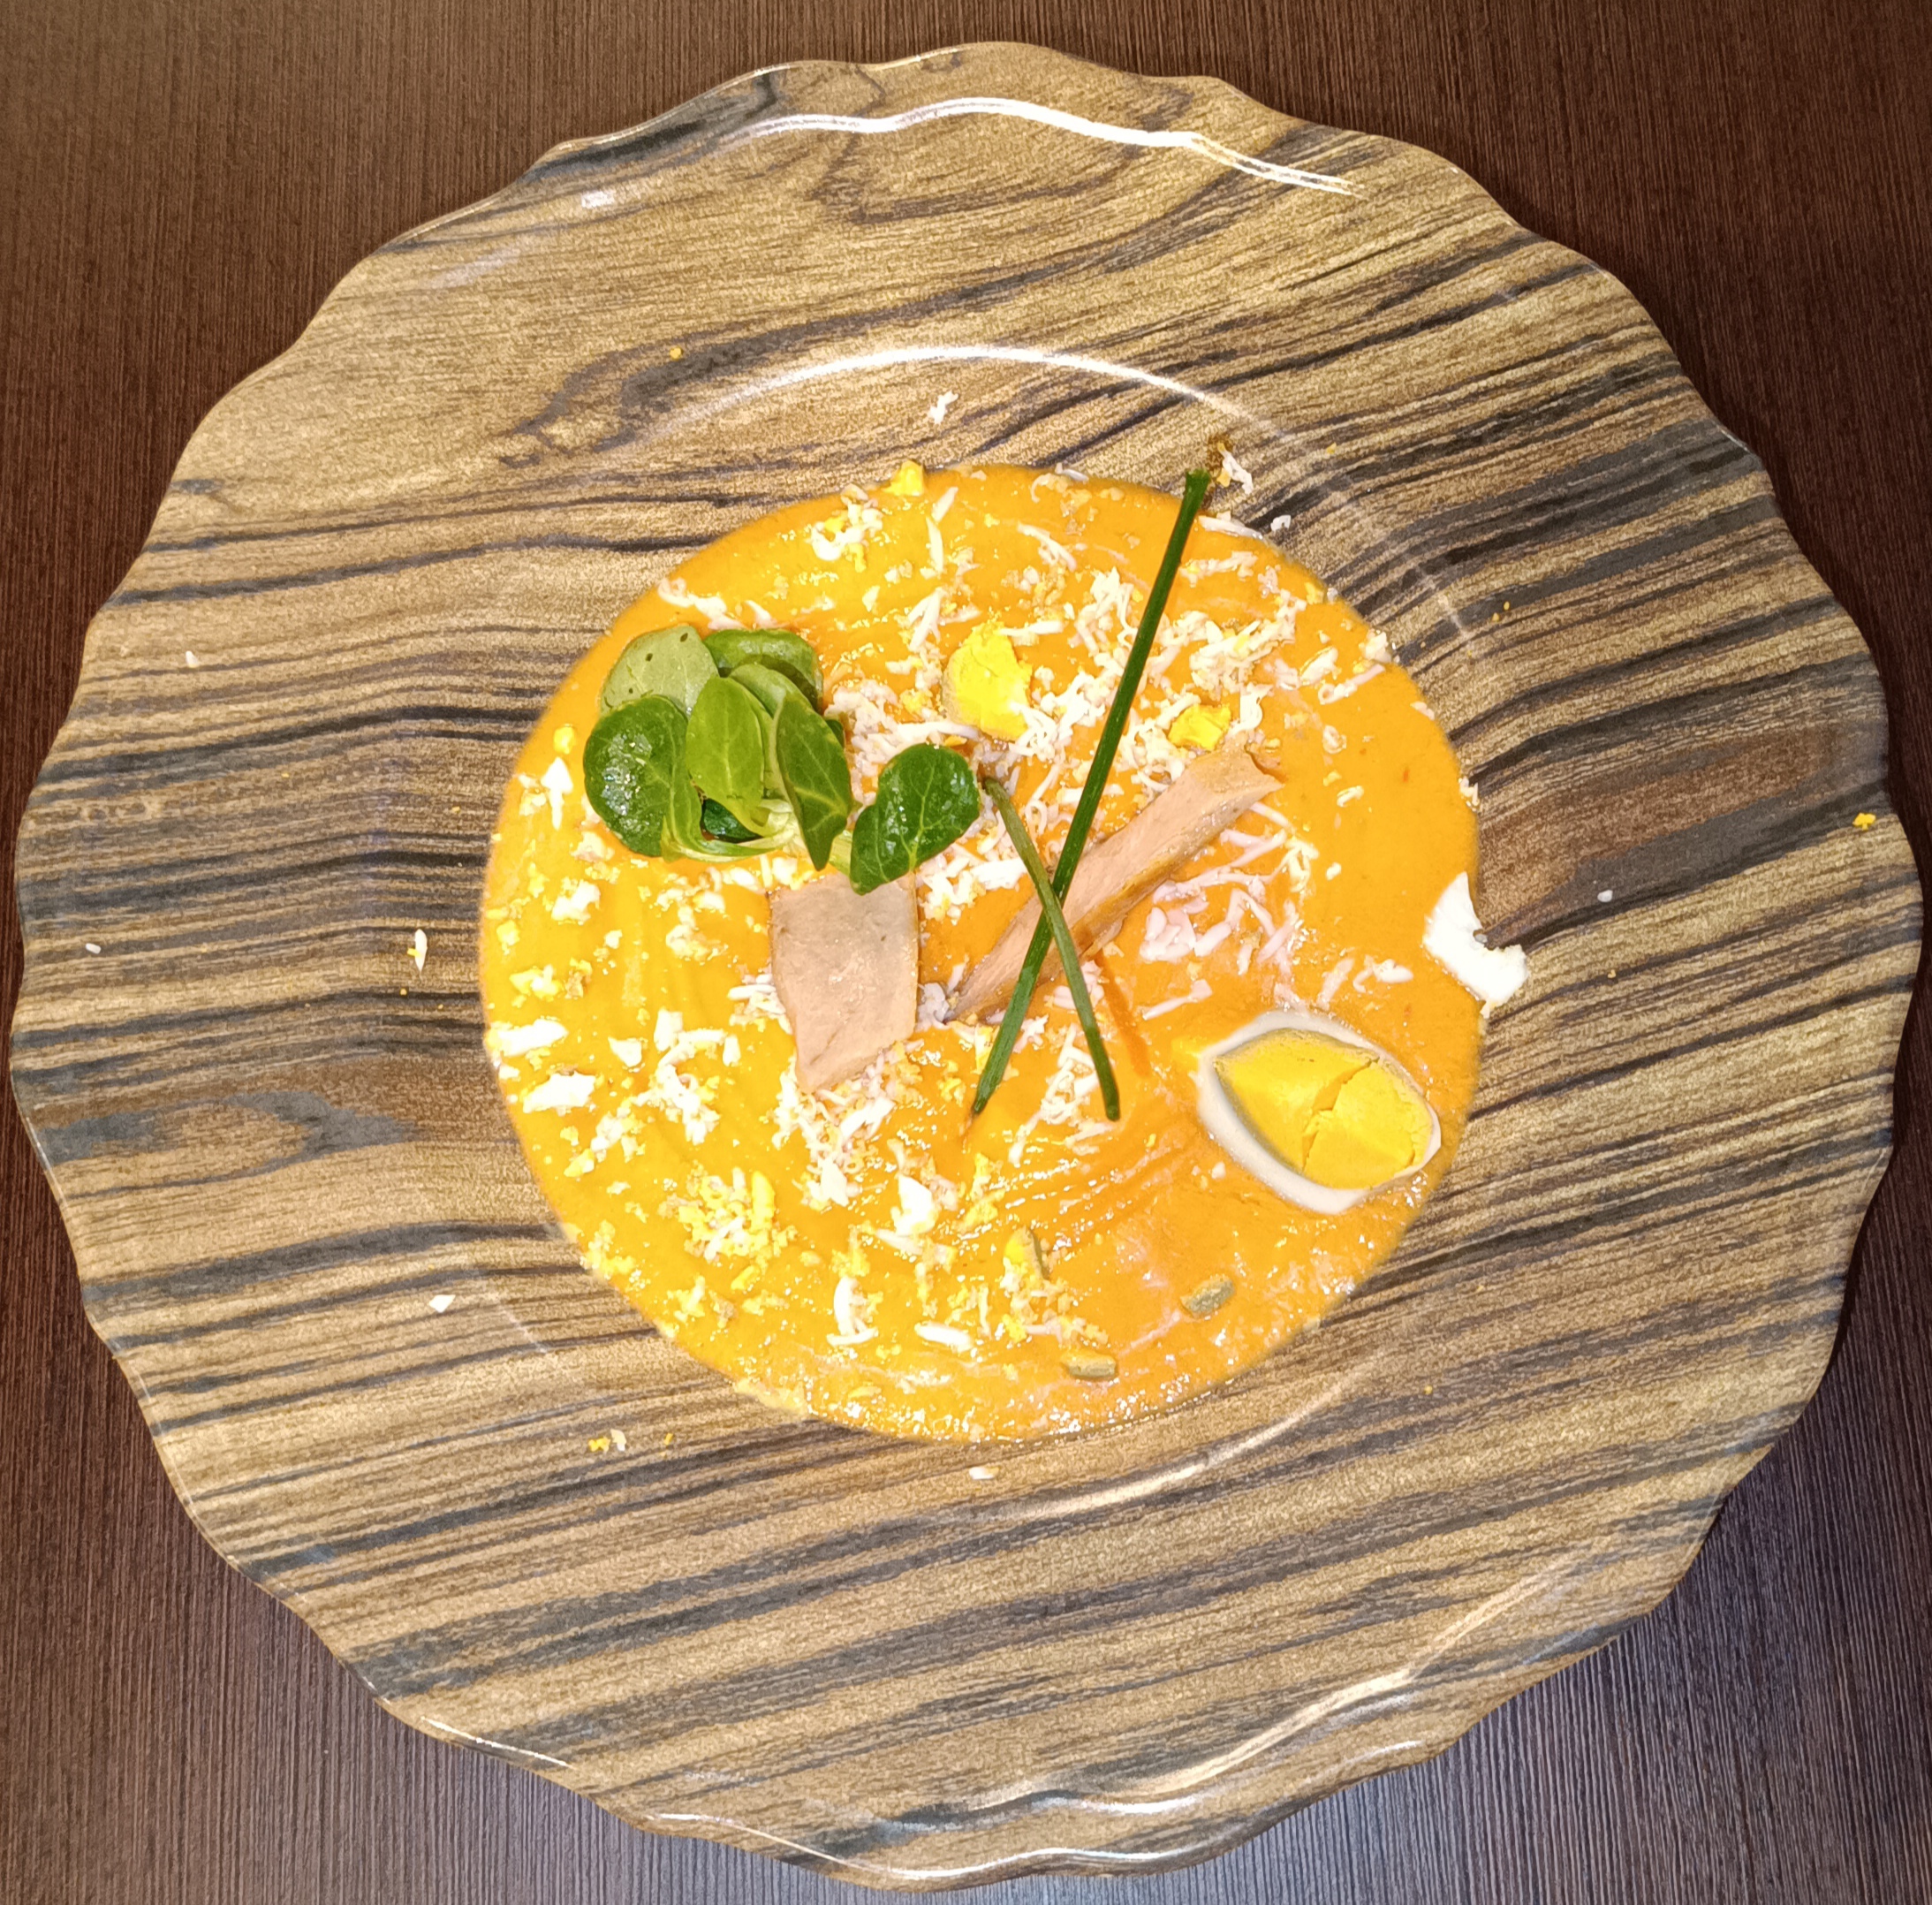 SALMOREJO (Cold tomato soup)